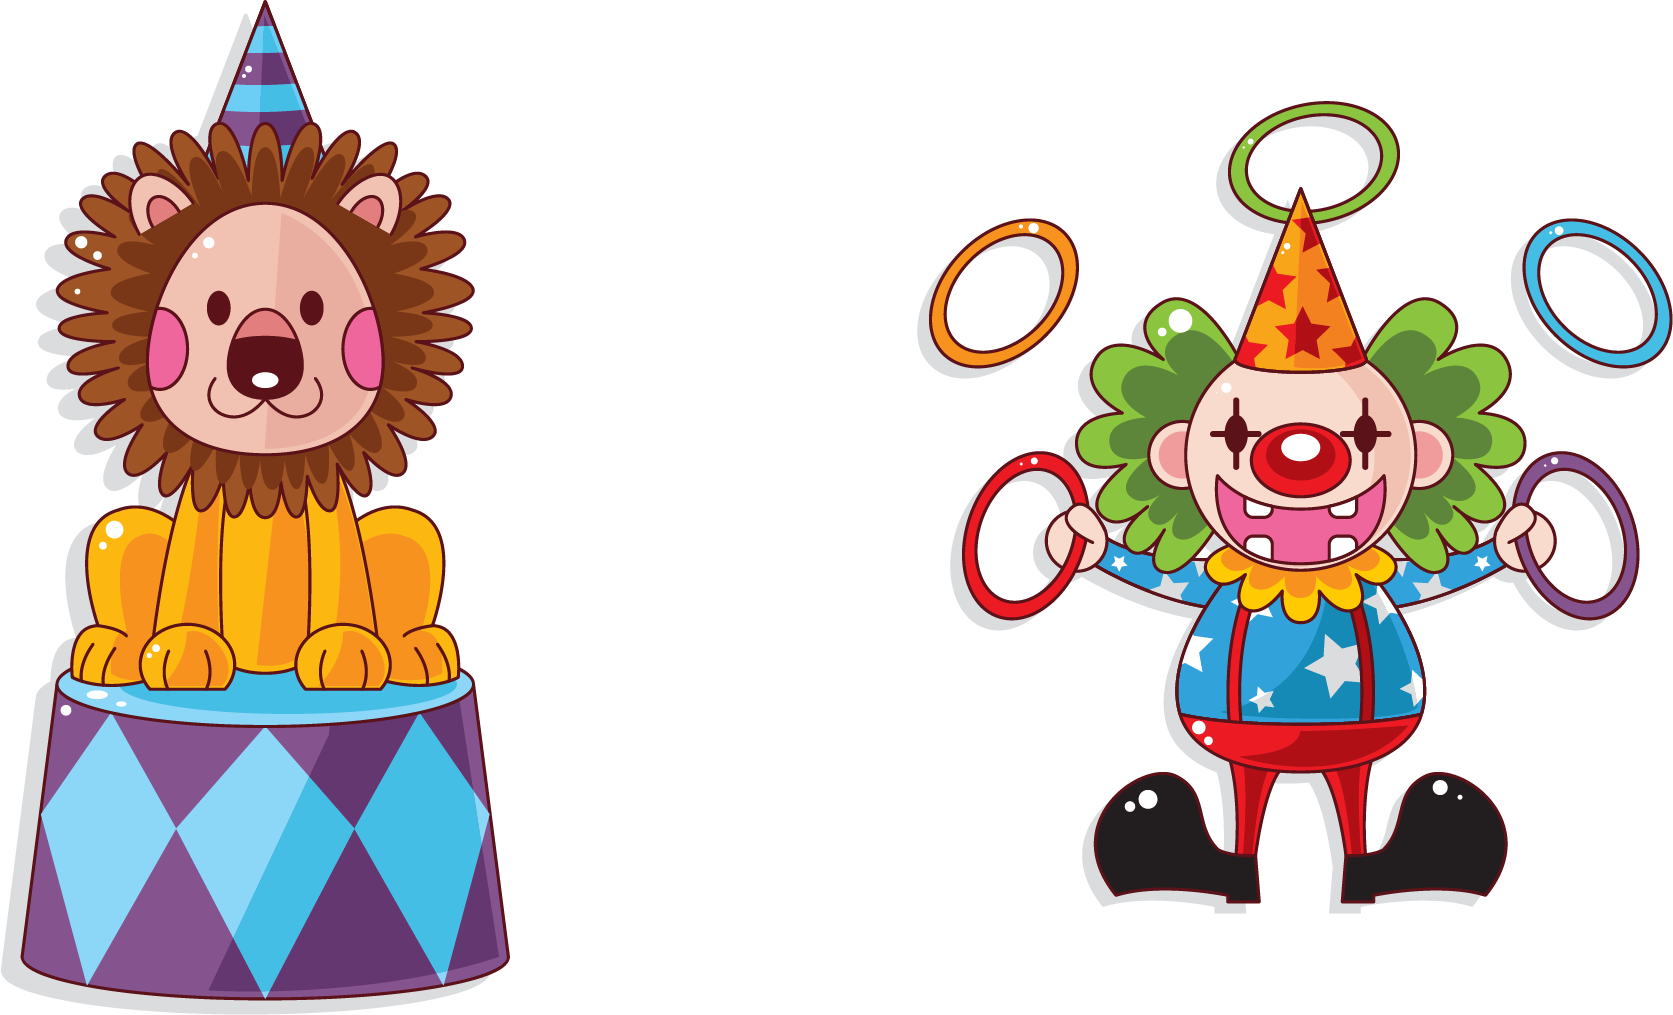 Lion Circus Cartoon Clown - Lion Circus Cartoon Clown (1673x1015)